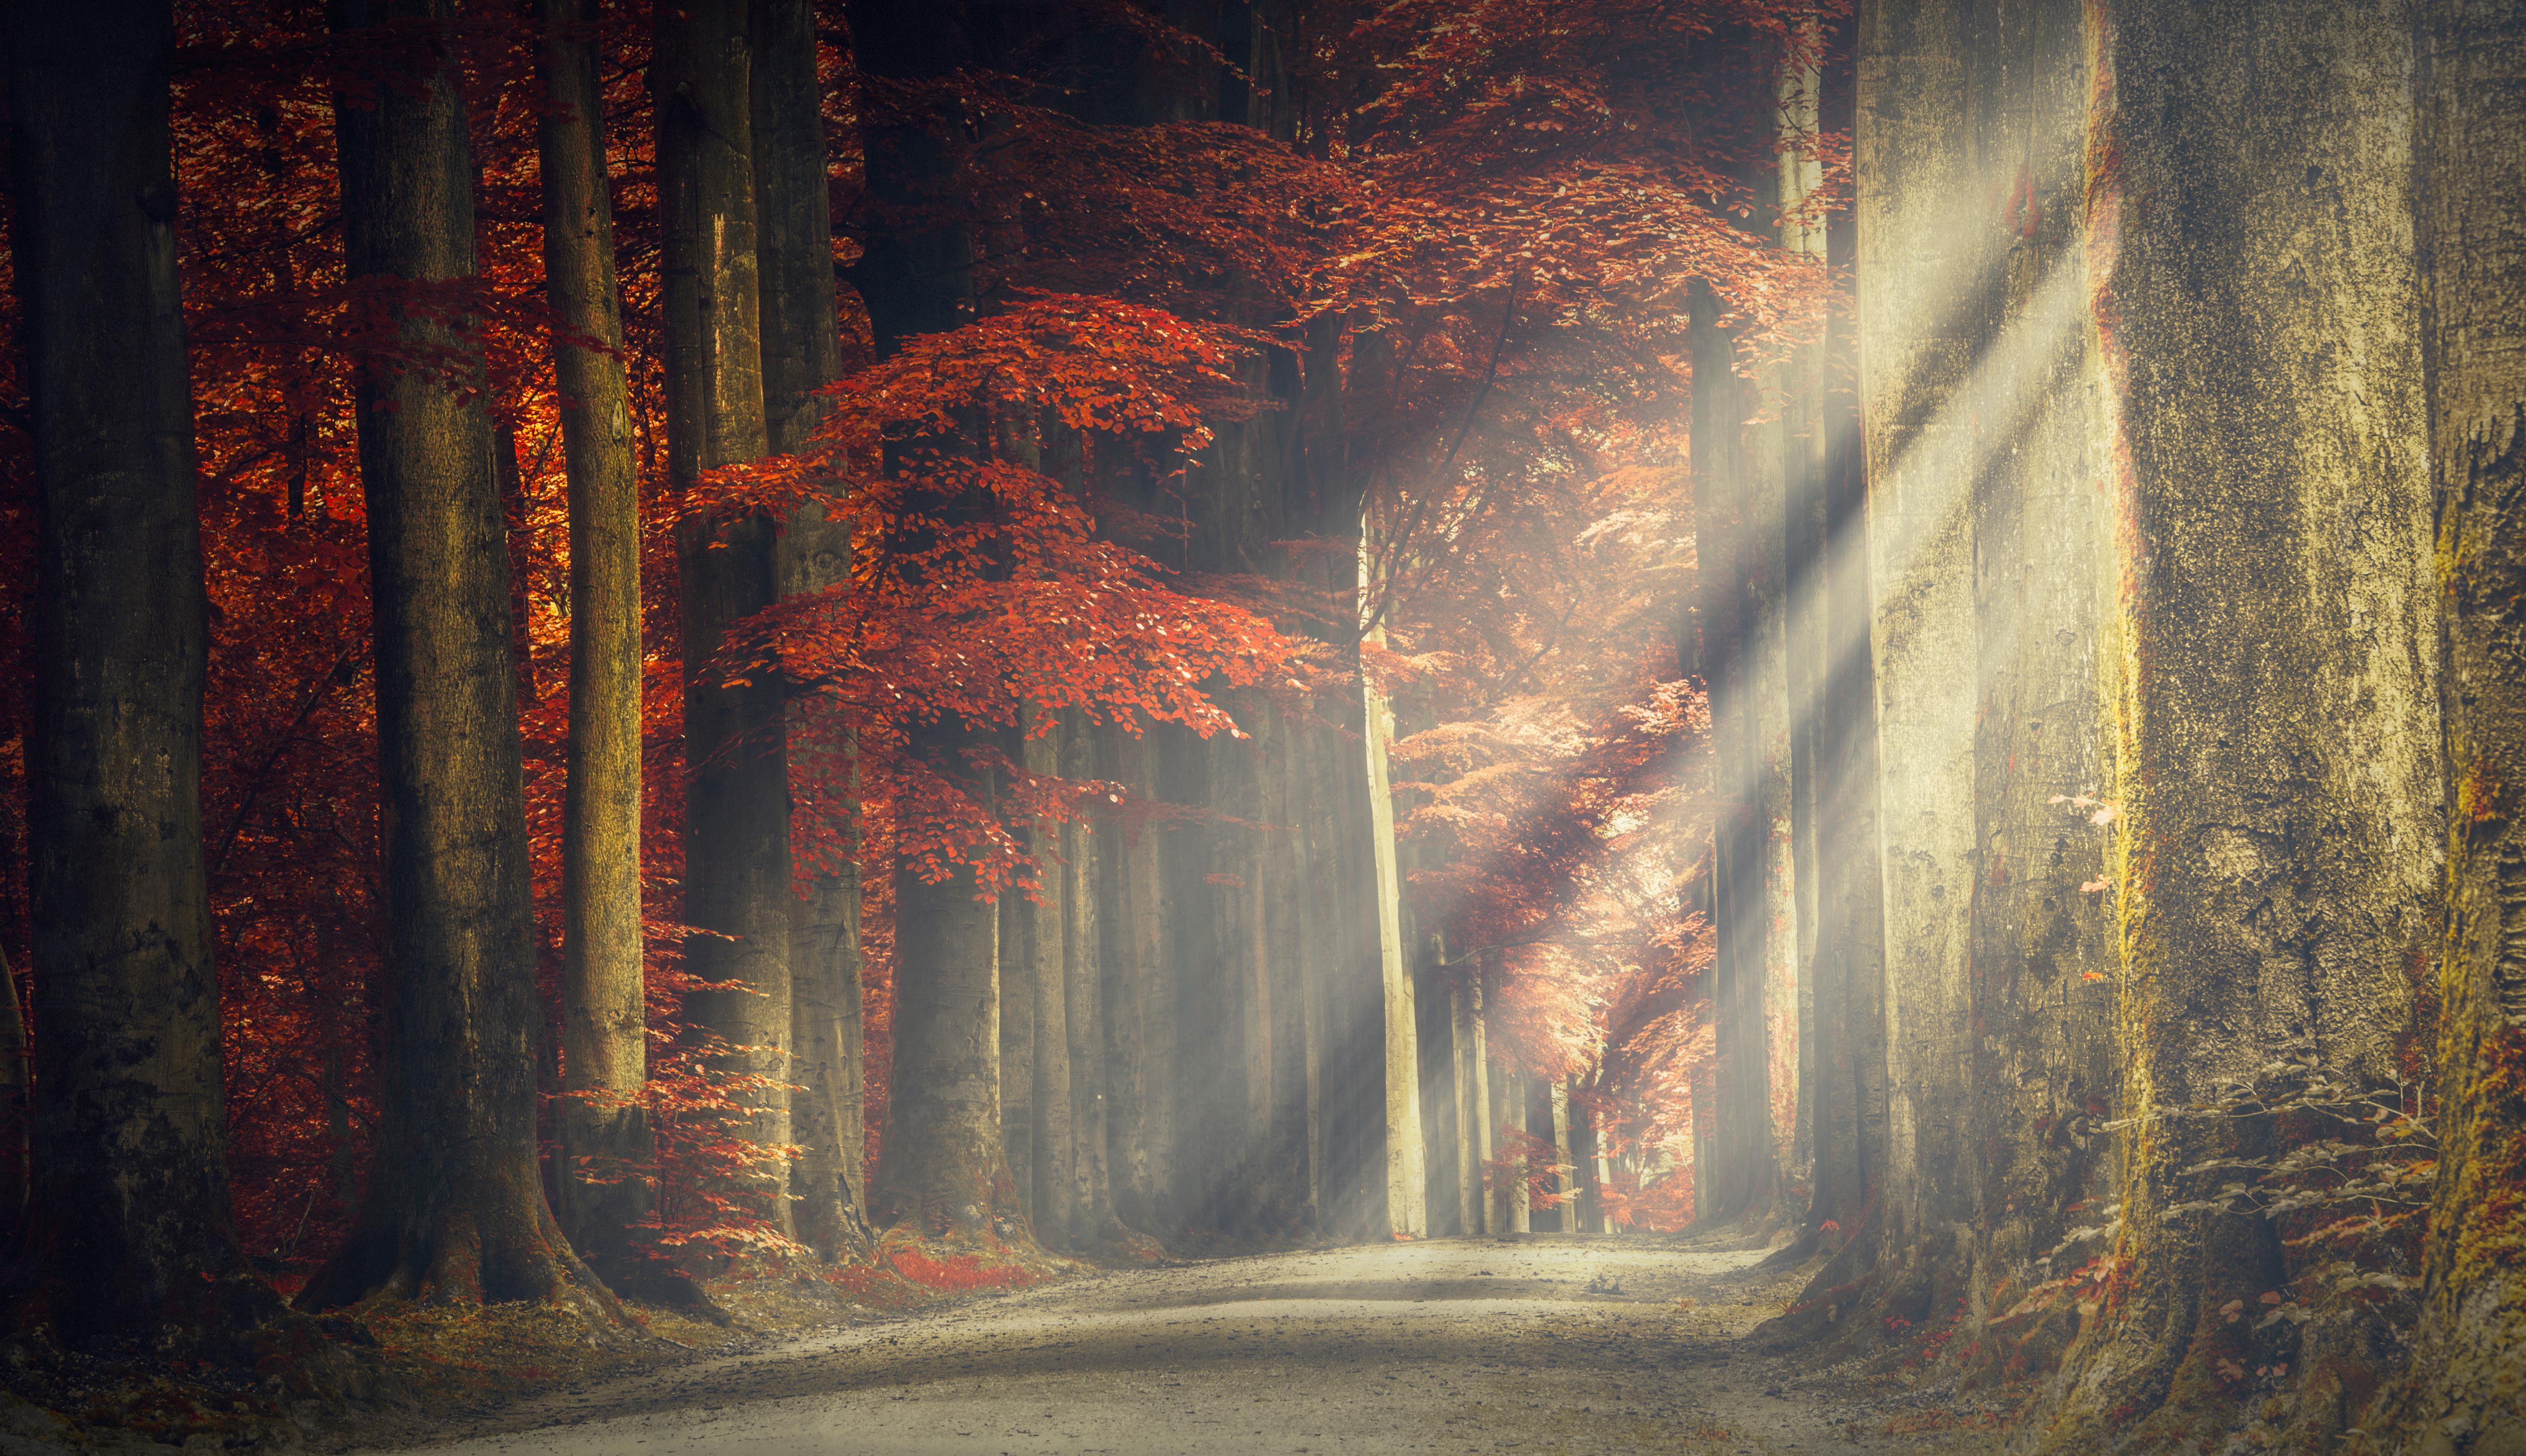 #Autumn, K, #Sun light, #Forest path. Nature wallpaper